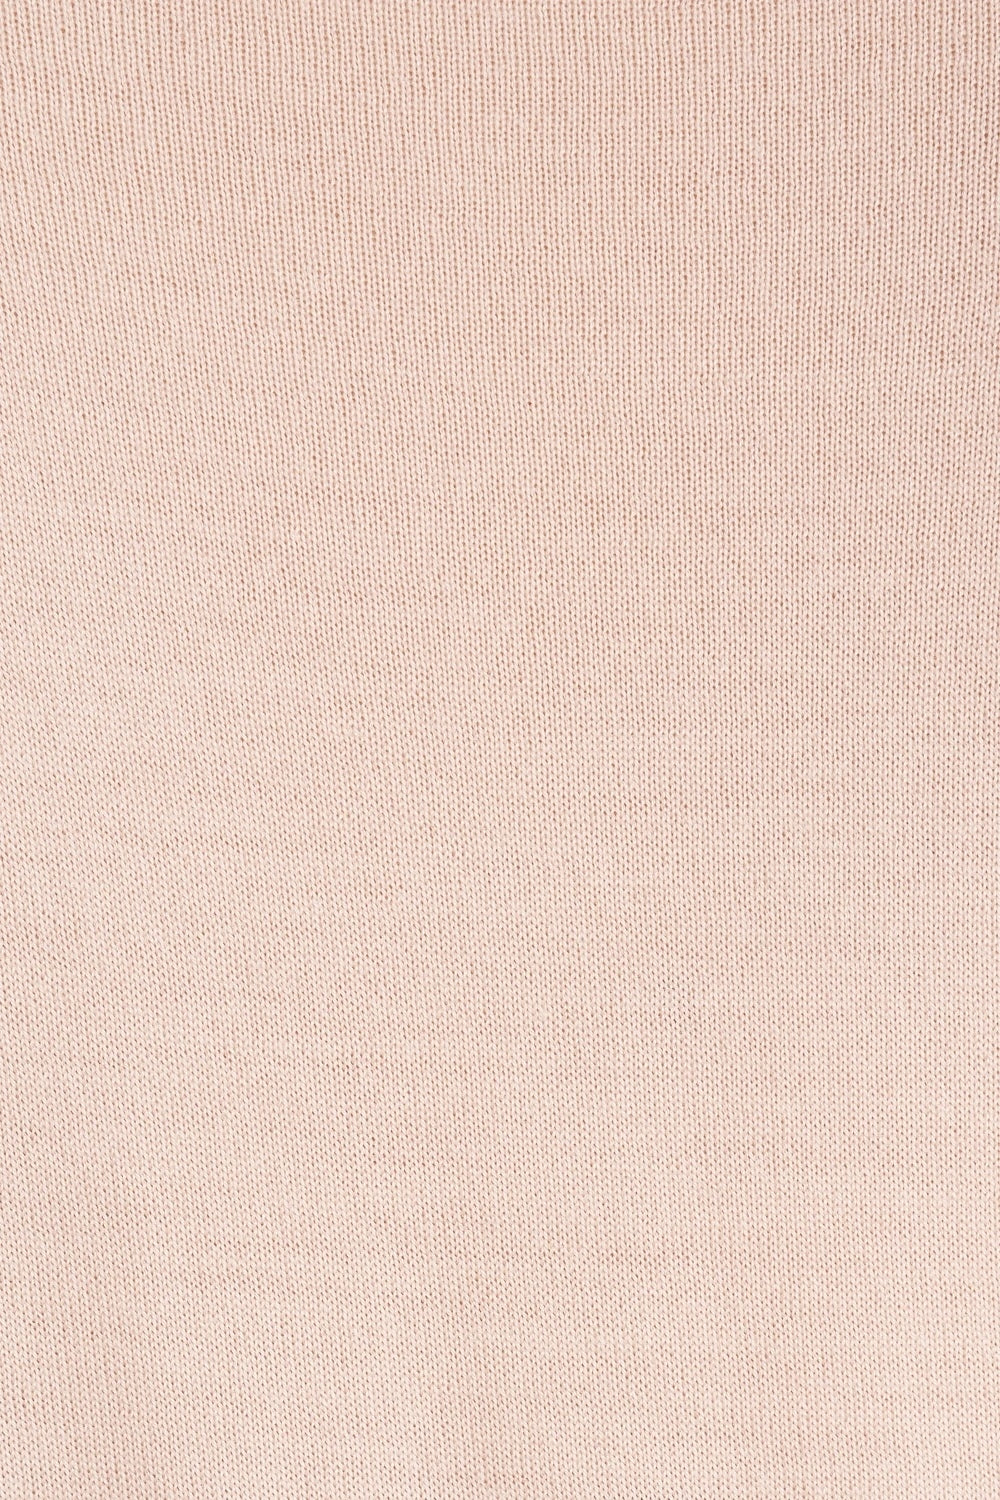 Peserico Pullover beige mit Rundhalsausschnitt in feiner Schurwollqualität. Schmal geschnittener Strickpullover mit Bündchenabschlüssen aus der neuen Peserico Herbst Kollektion.